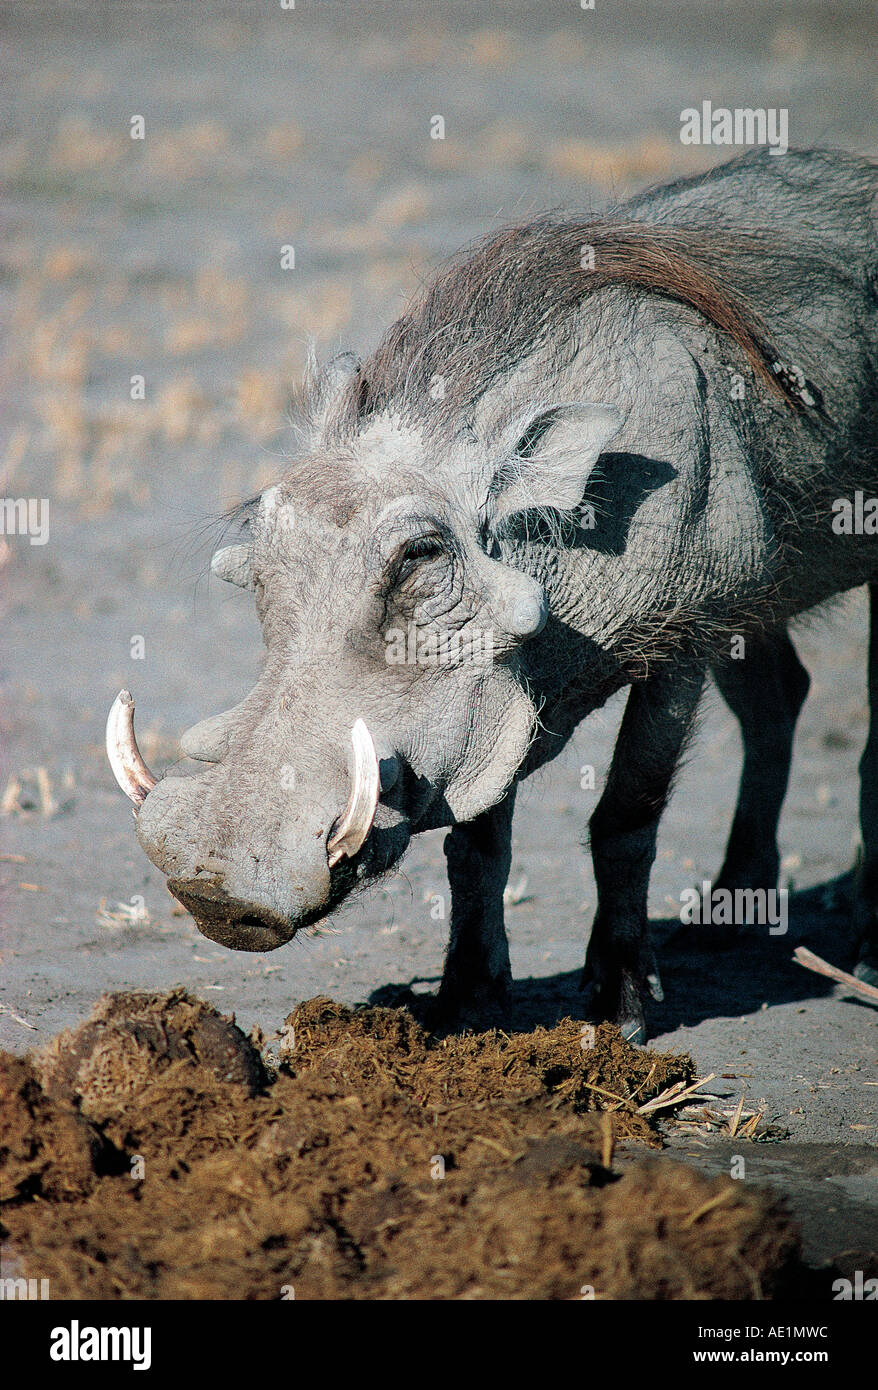 Der männliche Warzenschwein wühlen unter Elefanten Kot Botswana Chobe ...